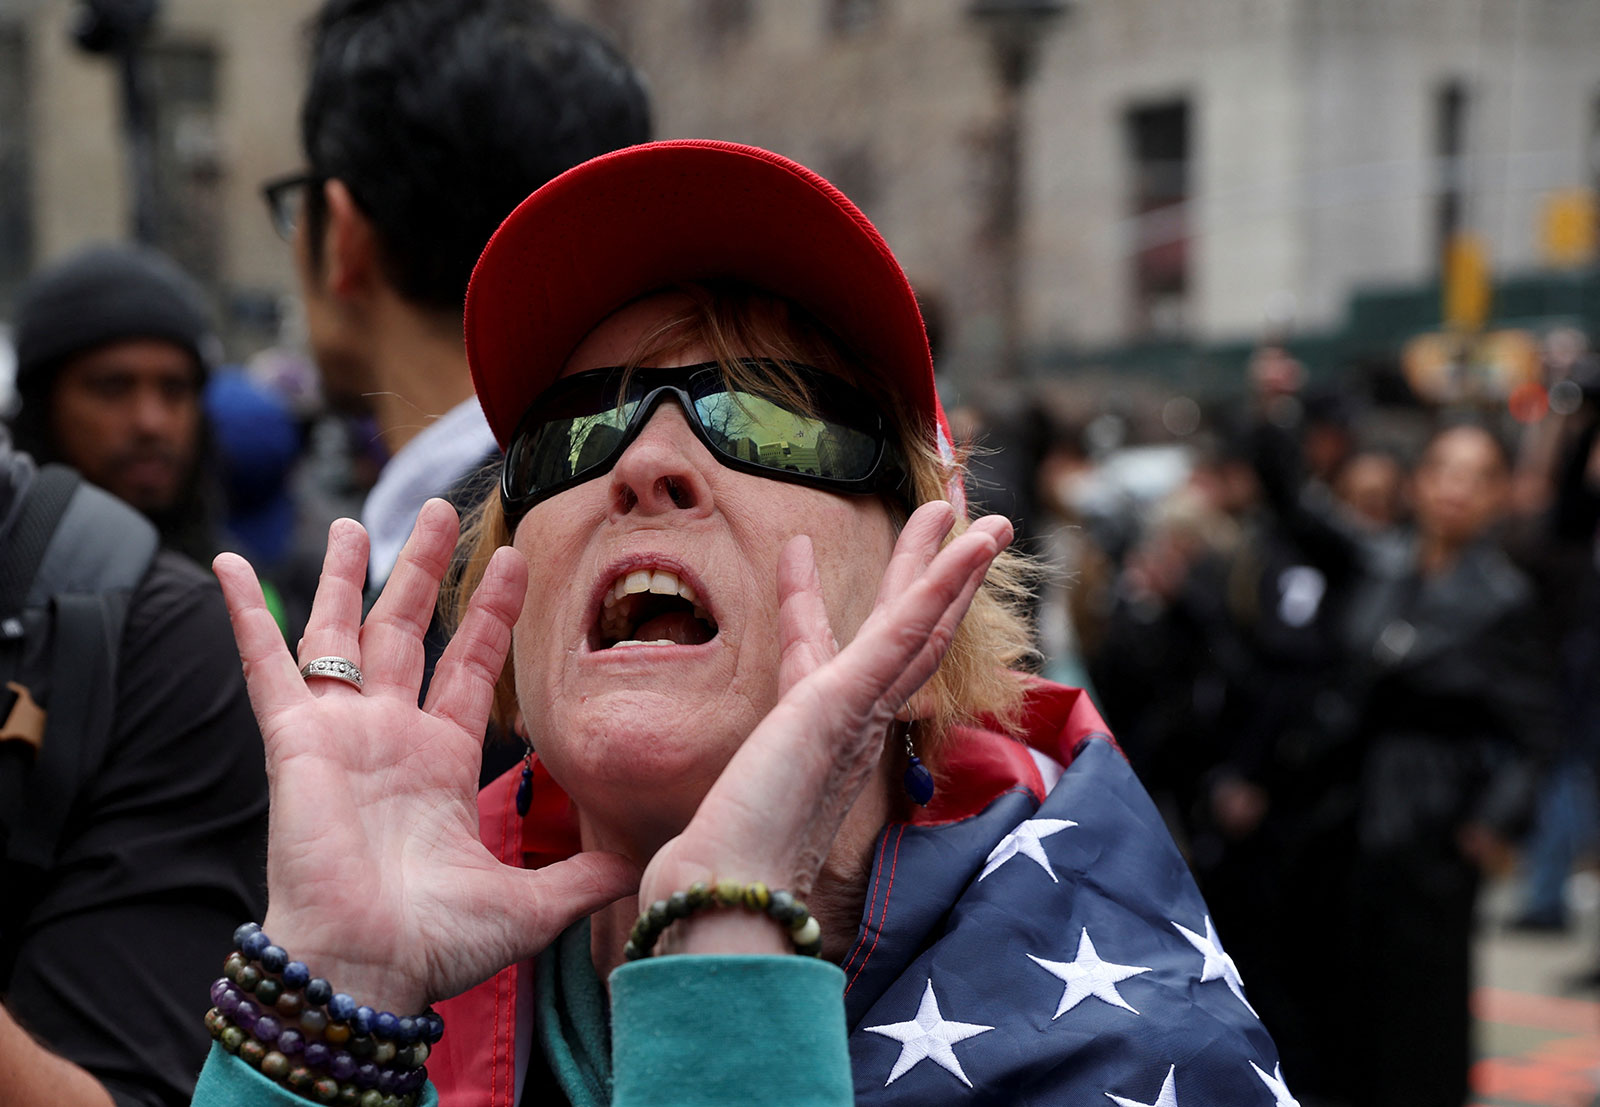 أحد مؤيدي الرئيس الأمريكي السابق دونالد ترامب يصرخ خارج محكمة مانهاتن الجنائية في يوم ظهور ترامب.